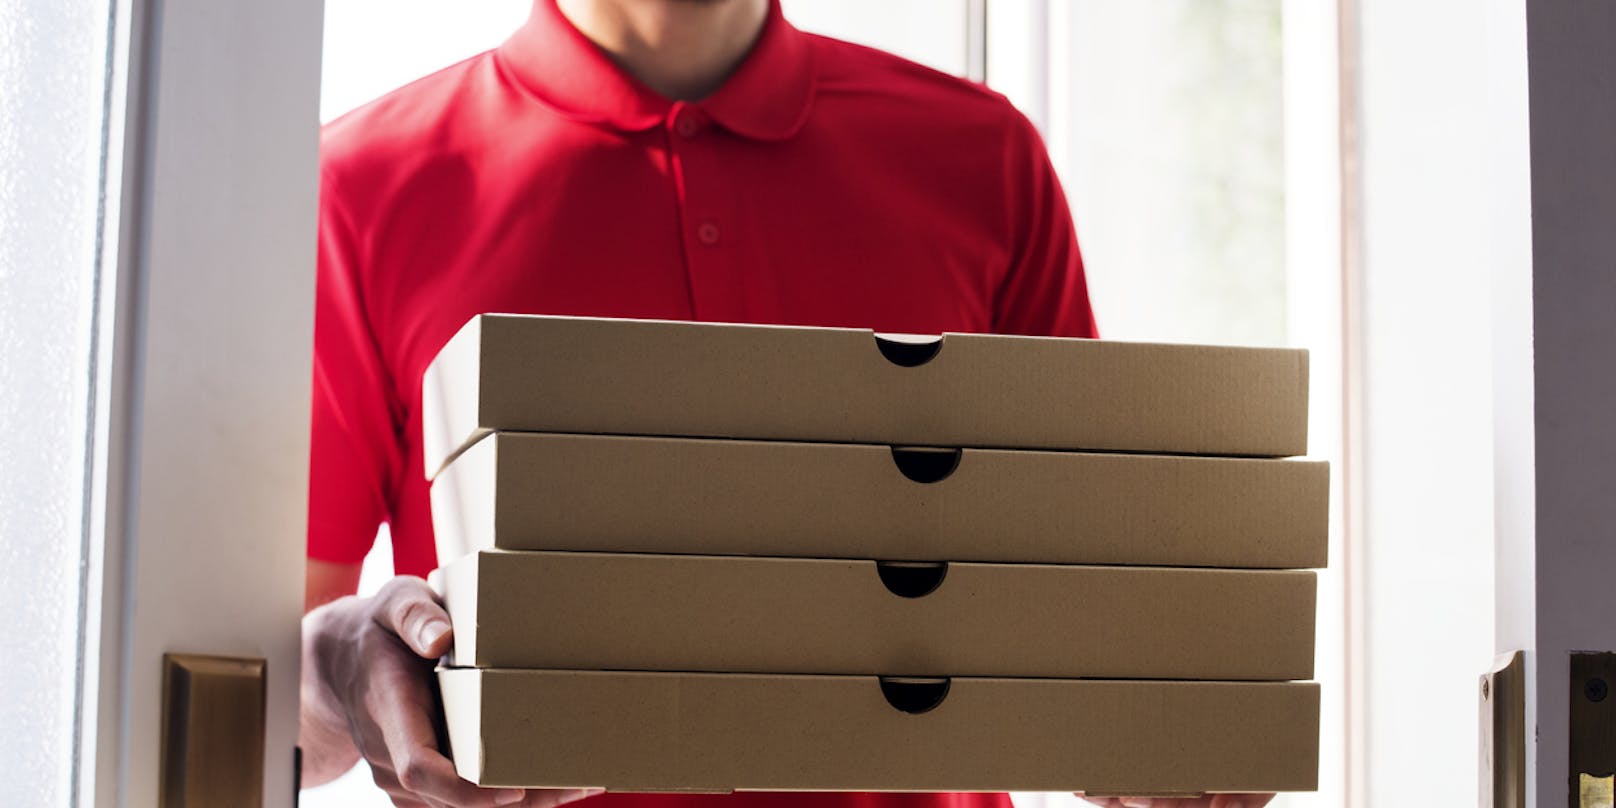 Der Pizza-Lieferant arbeitete 16 Stunden am Tag - ohne Überstundenentgelt.